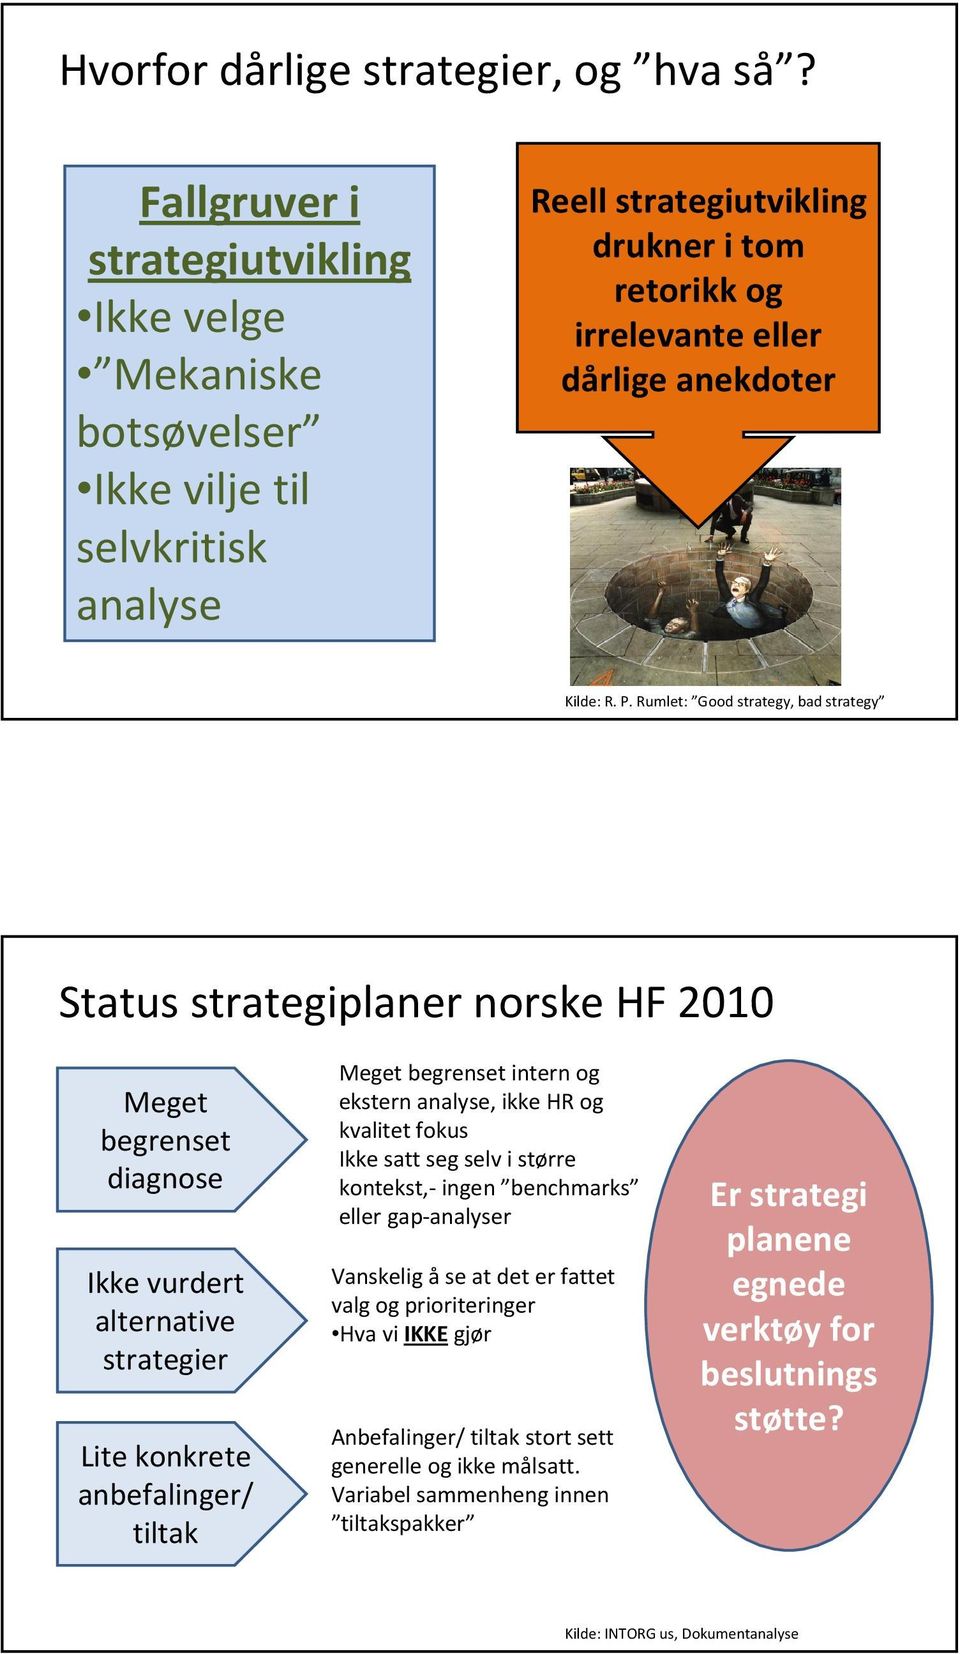 Rumlet: Good strategy, bad strategy Status strategiplaner norske HF 2010 Meget begrenset diagnose Ikke vurdert alternative strategier Lite konkrete anbefalinger/ tiltak Meget begrenset intern og